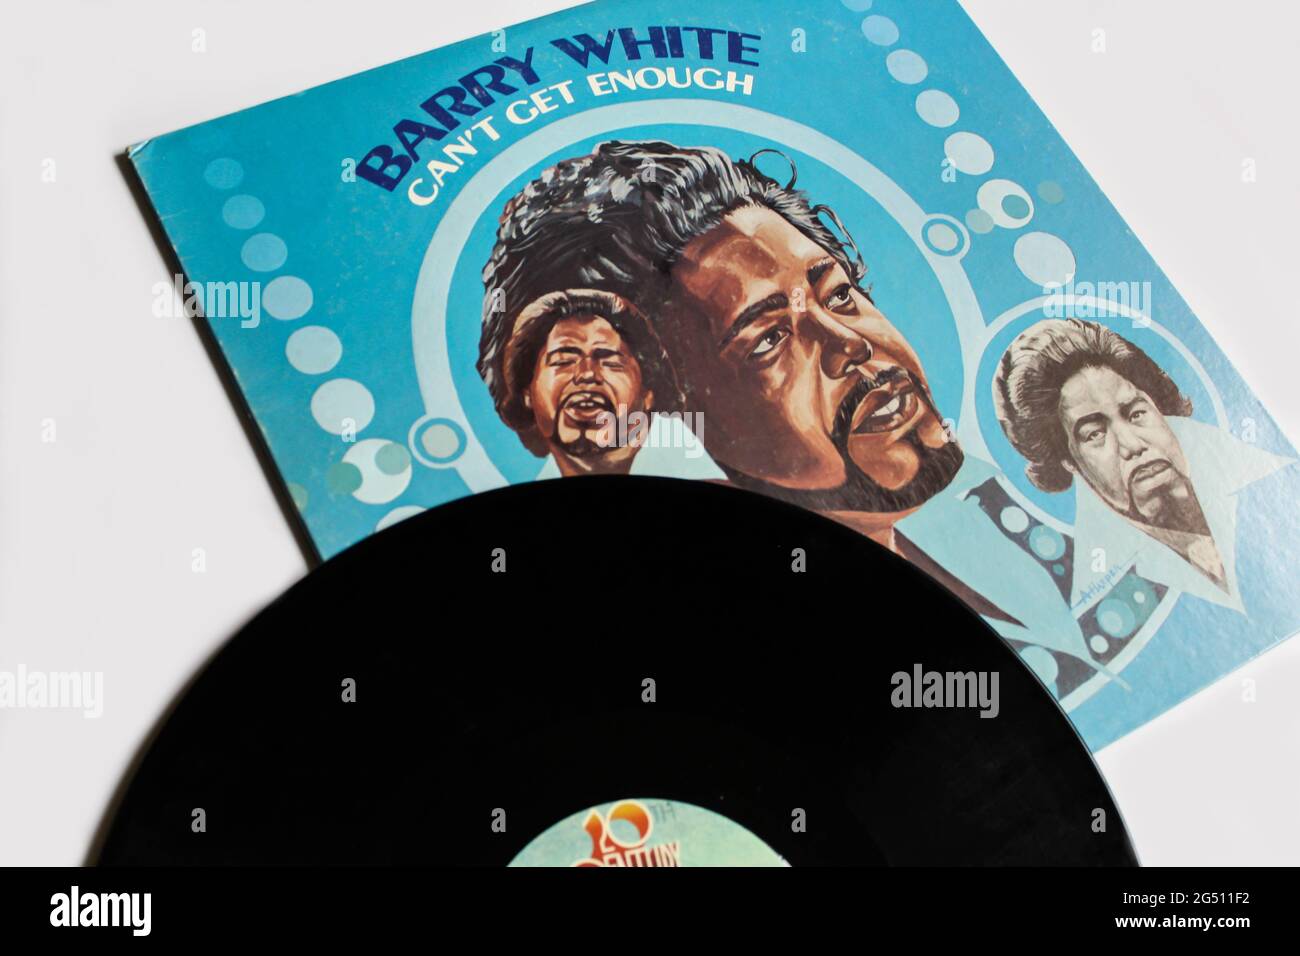 R&B, Disco- und Soul-Künstler Barry White, Musikalbum auf Vinyl-LP. Titel: Kann nicht genug Albumcover bekommen Stockfoto